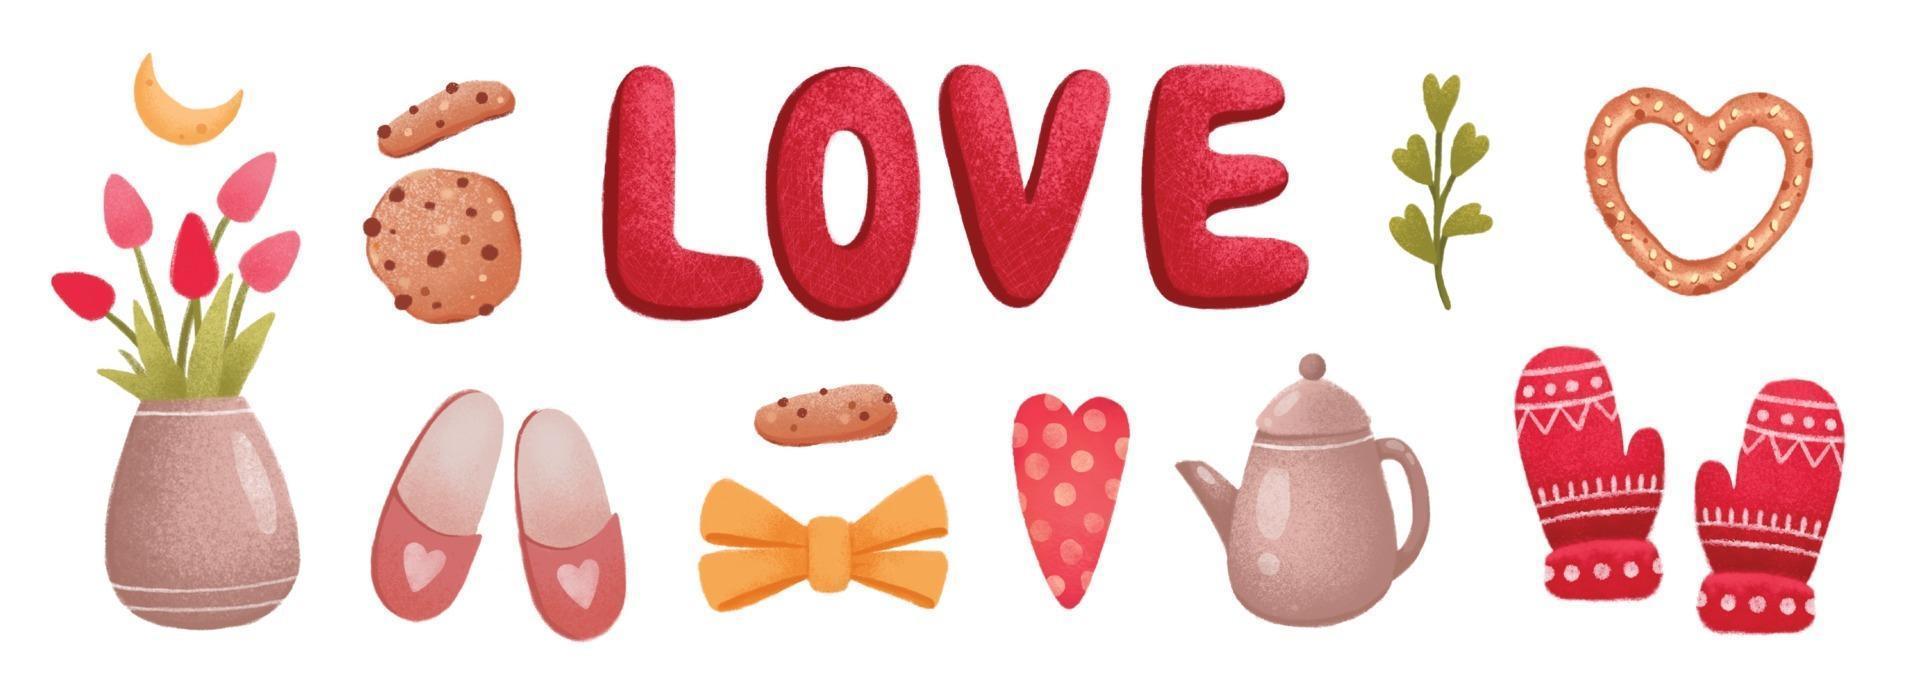 Liebe Valentinstag Icon Set, Tulpe, Keks, Hausschuhe, Handschuhe, Herzen vektor